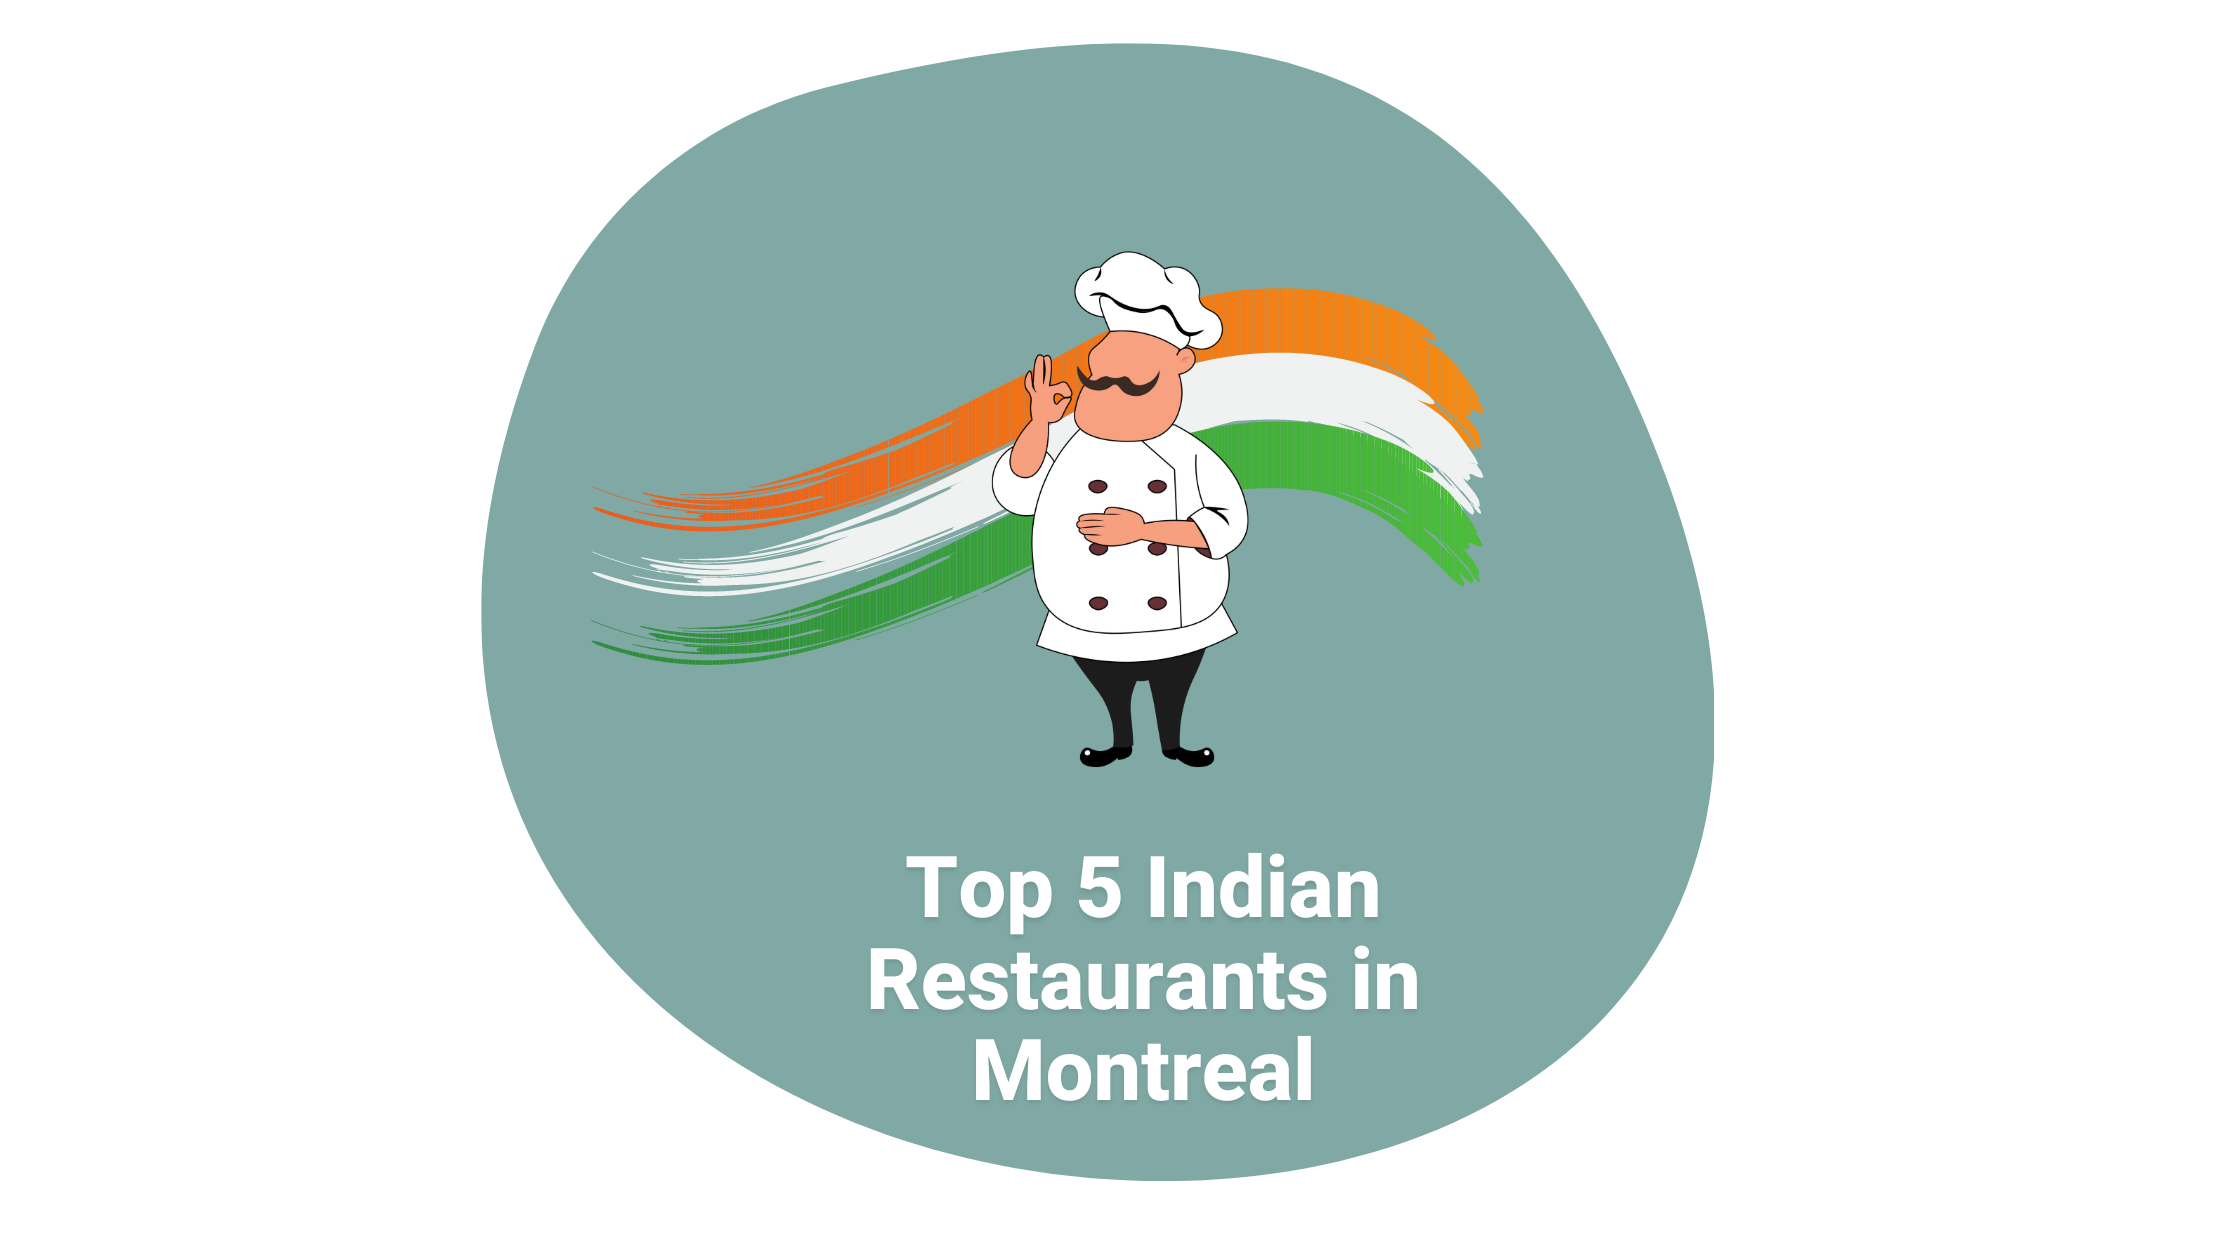 Top 5 Indian Restaurants in Montreal